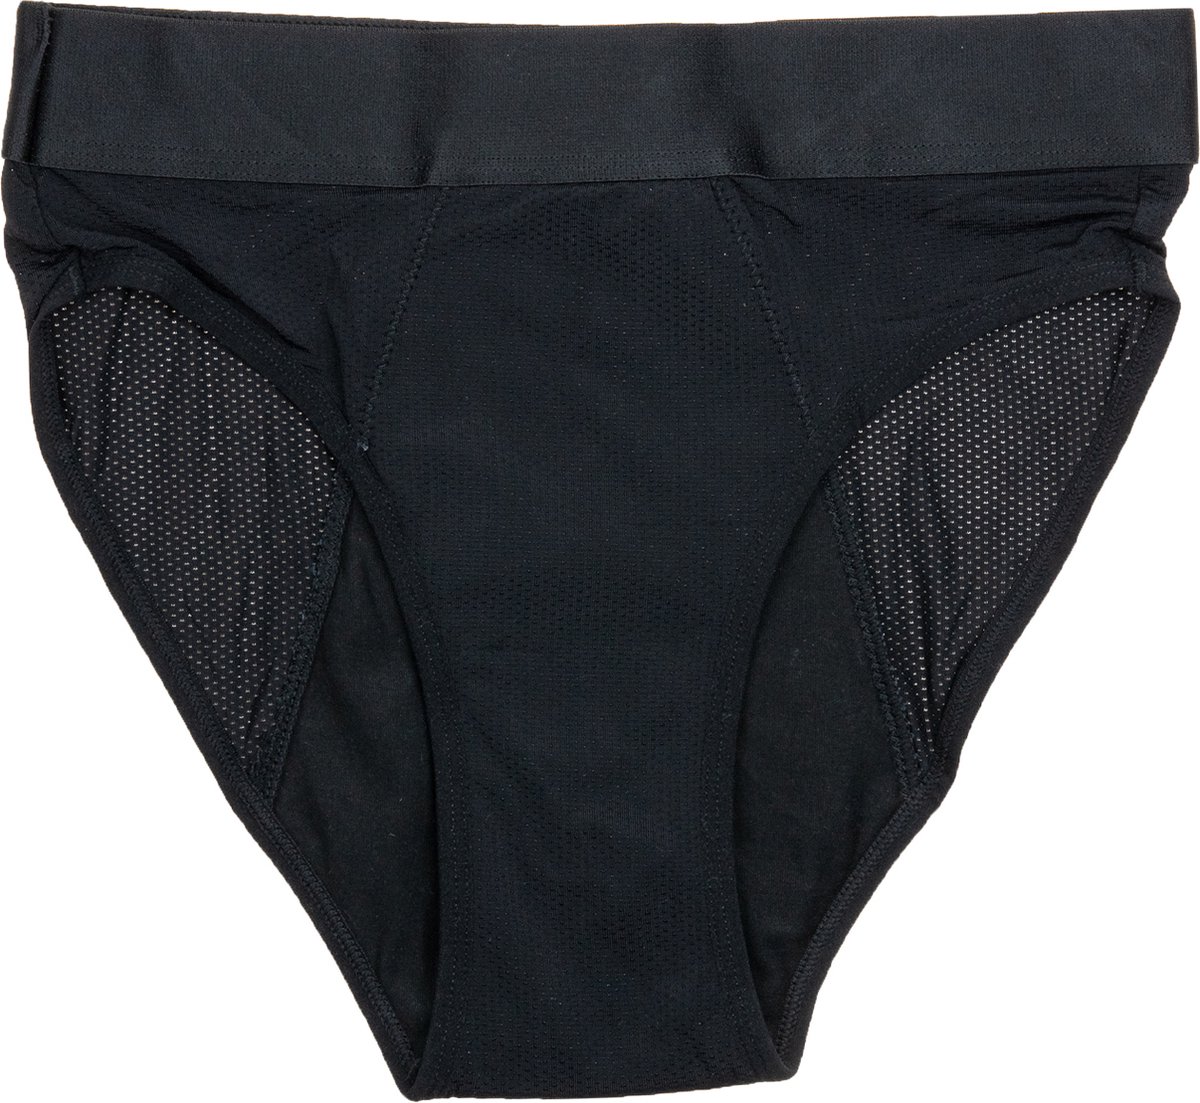 Cheeky Pants Feeling Hip - Menstruatieondergoed - Maat 34-36 - Zero Waste - Lekvrij - Comfortabel